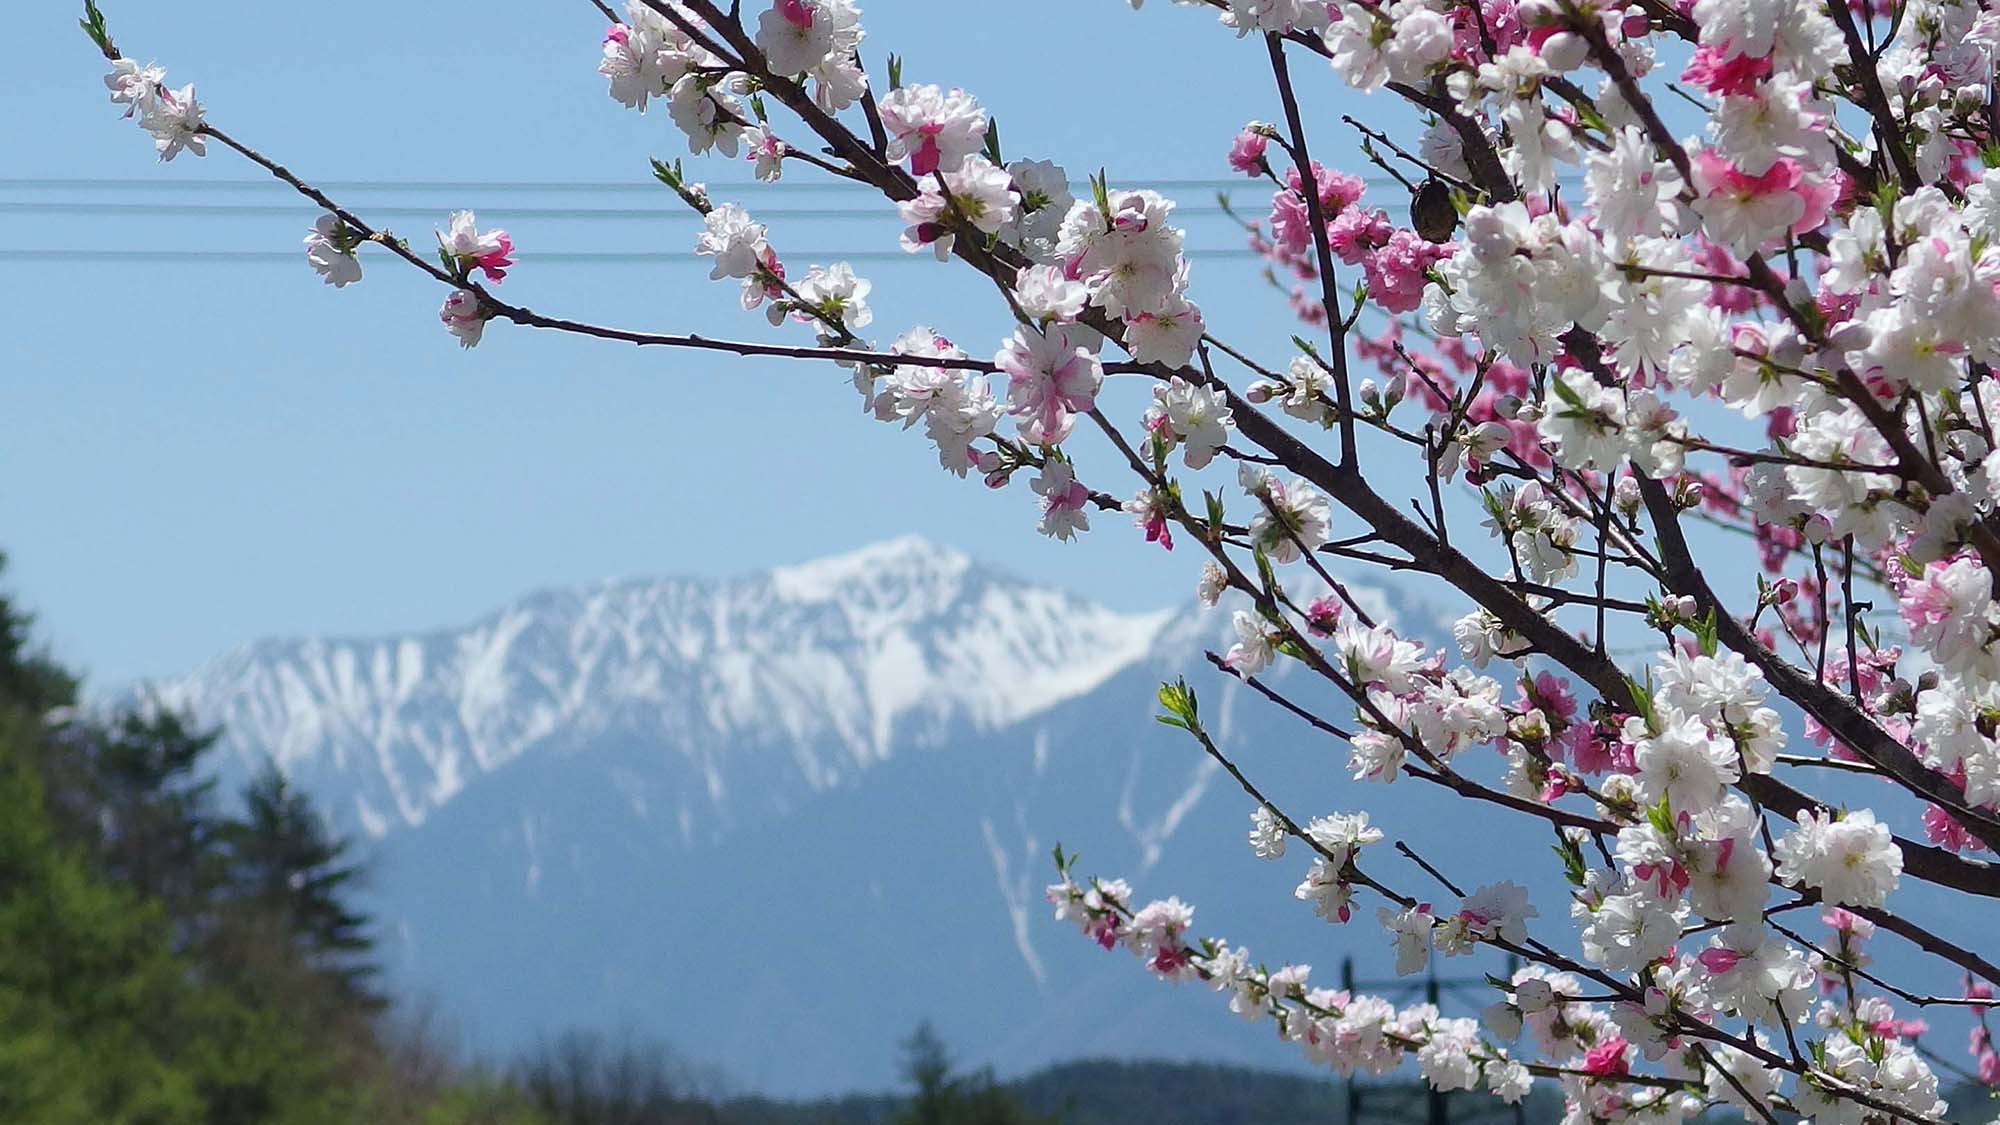 ・アルプス山脈を背景に咲き誇る桜の花